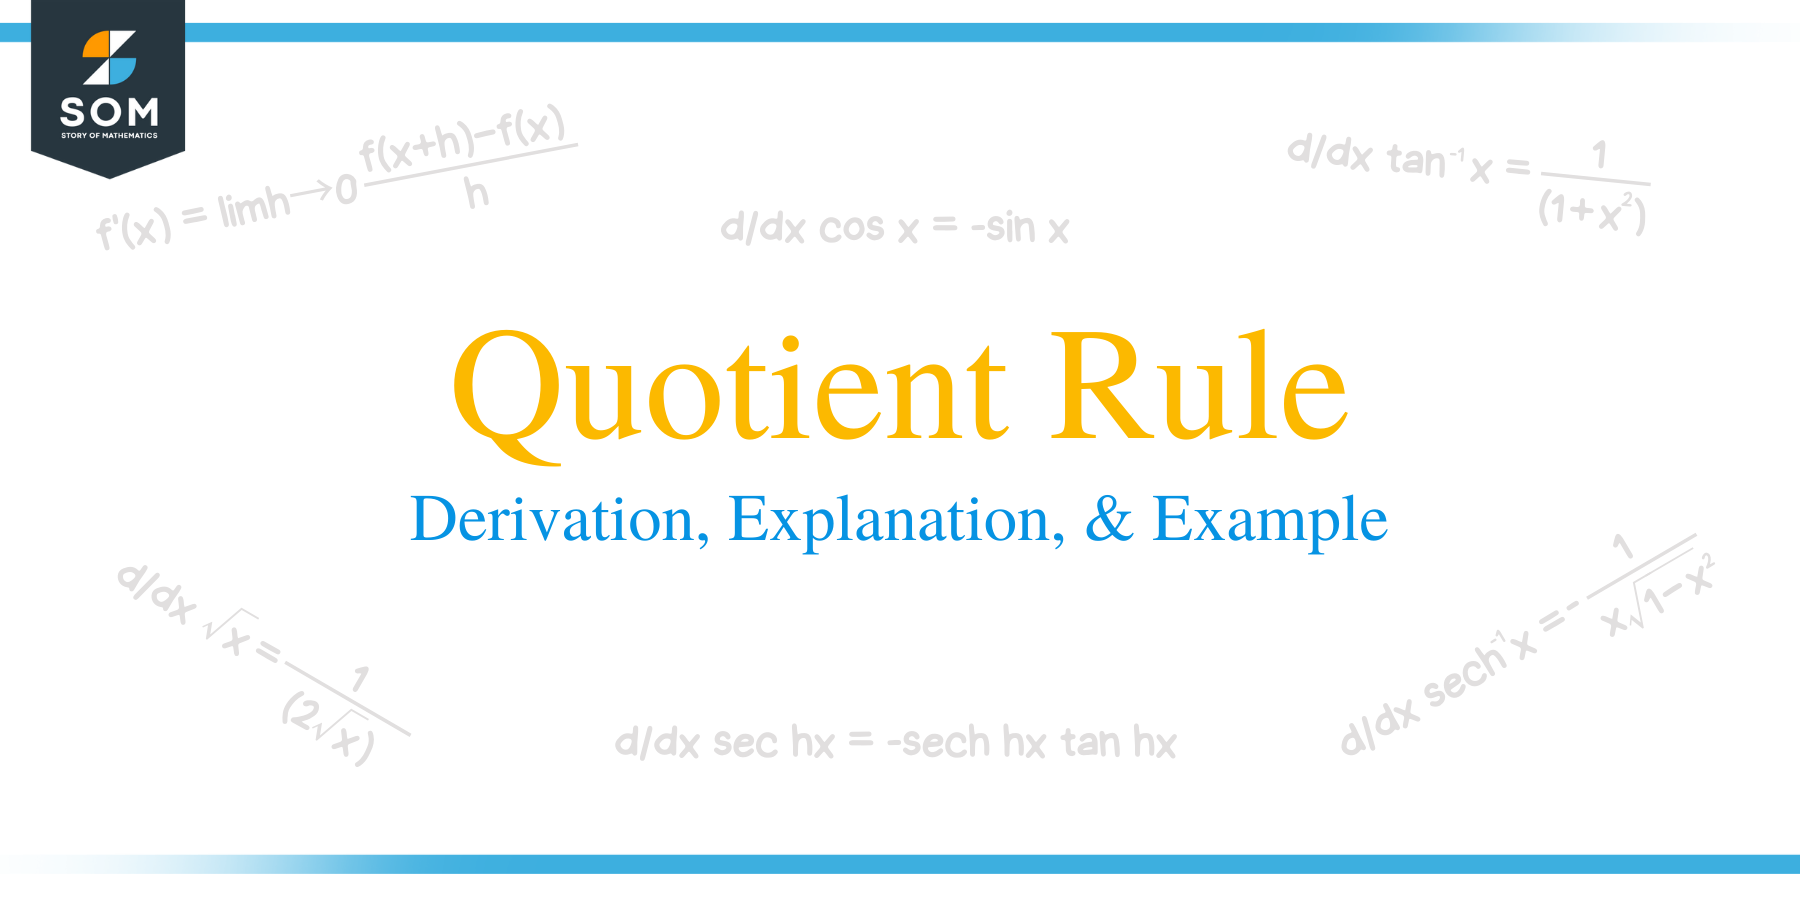 Quotient rule